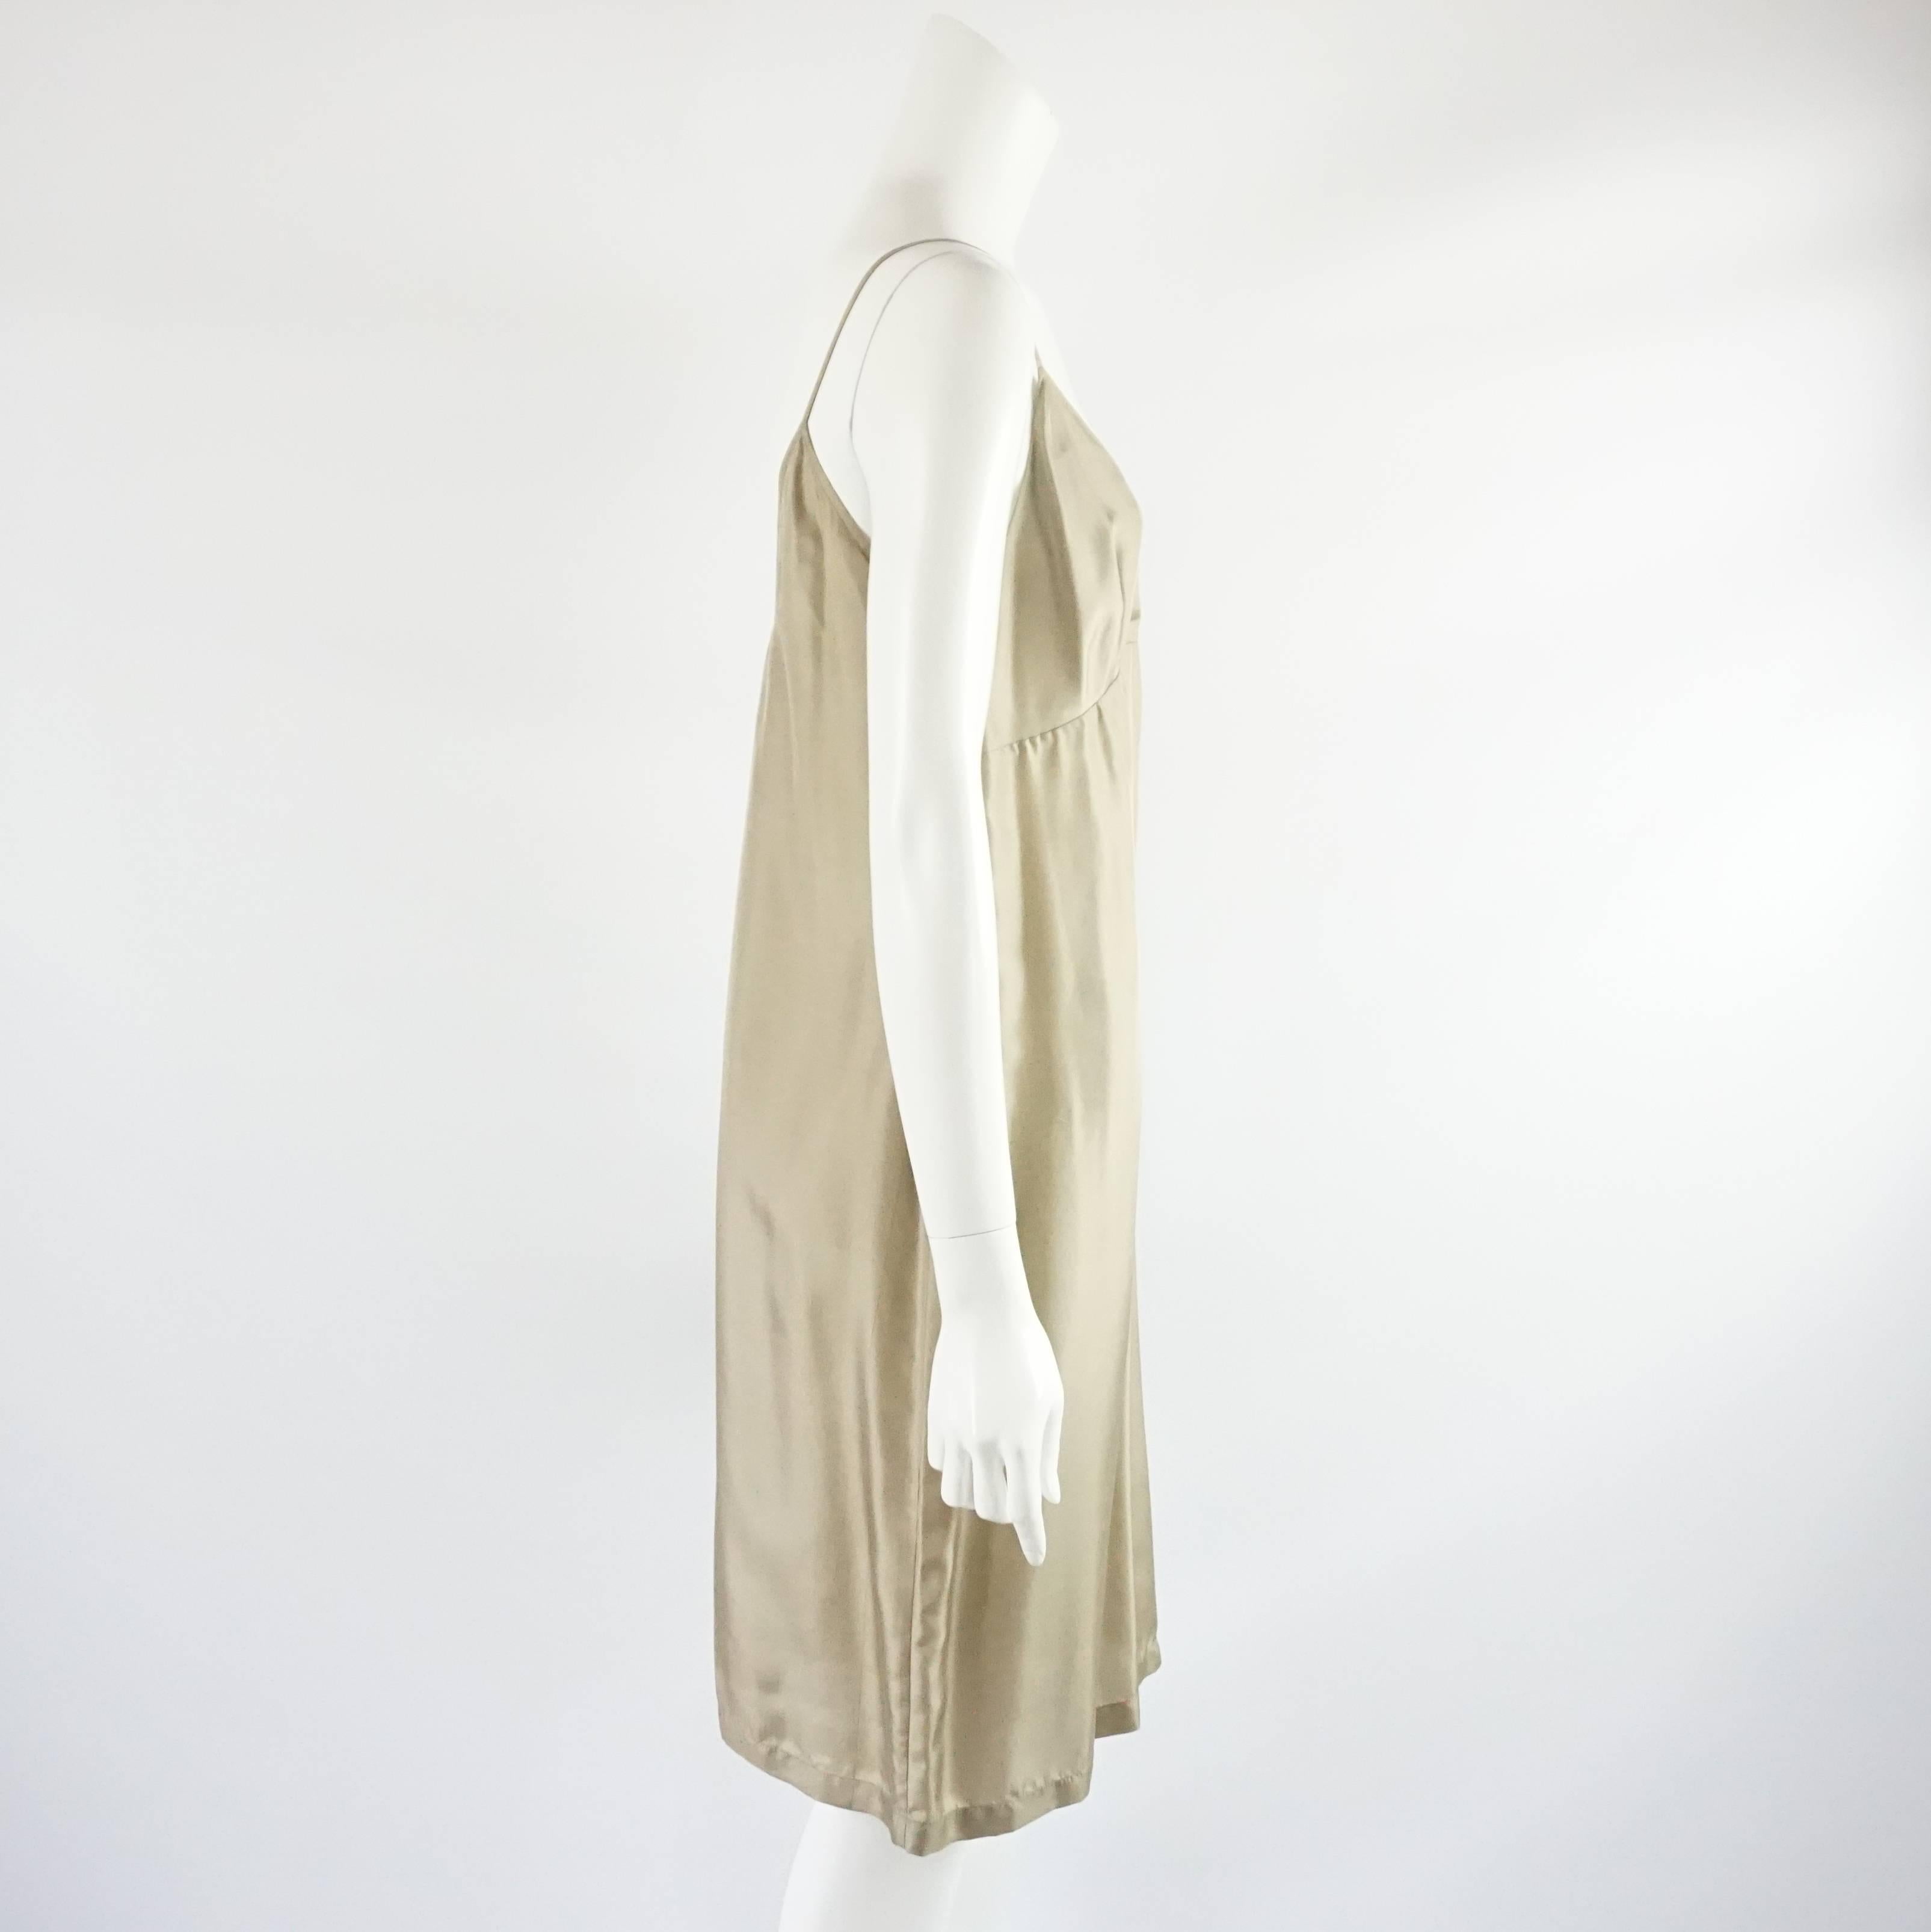 Cette robe fourreau Dries Van Noten est en soie taupe. Elle présente des bretelles spaghetti et une encolure en V. Cette robe est en excellent état.

Mesures
Poitrine : 34